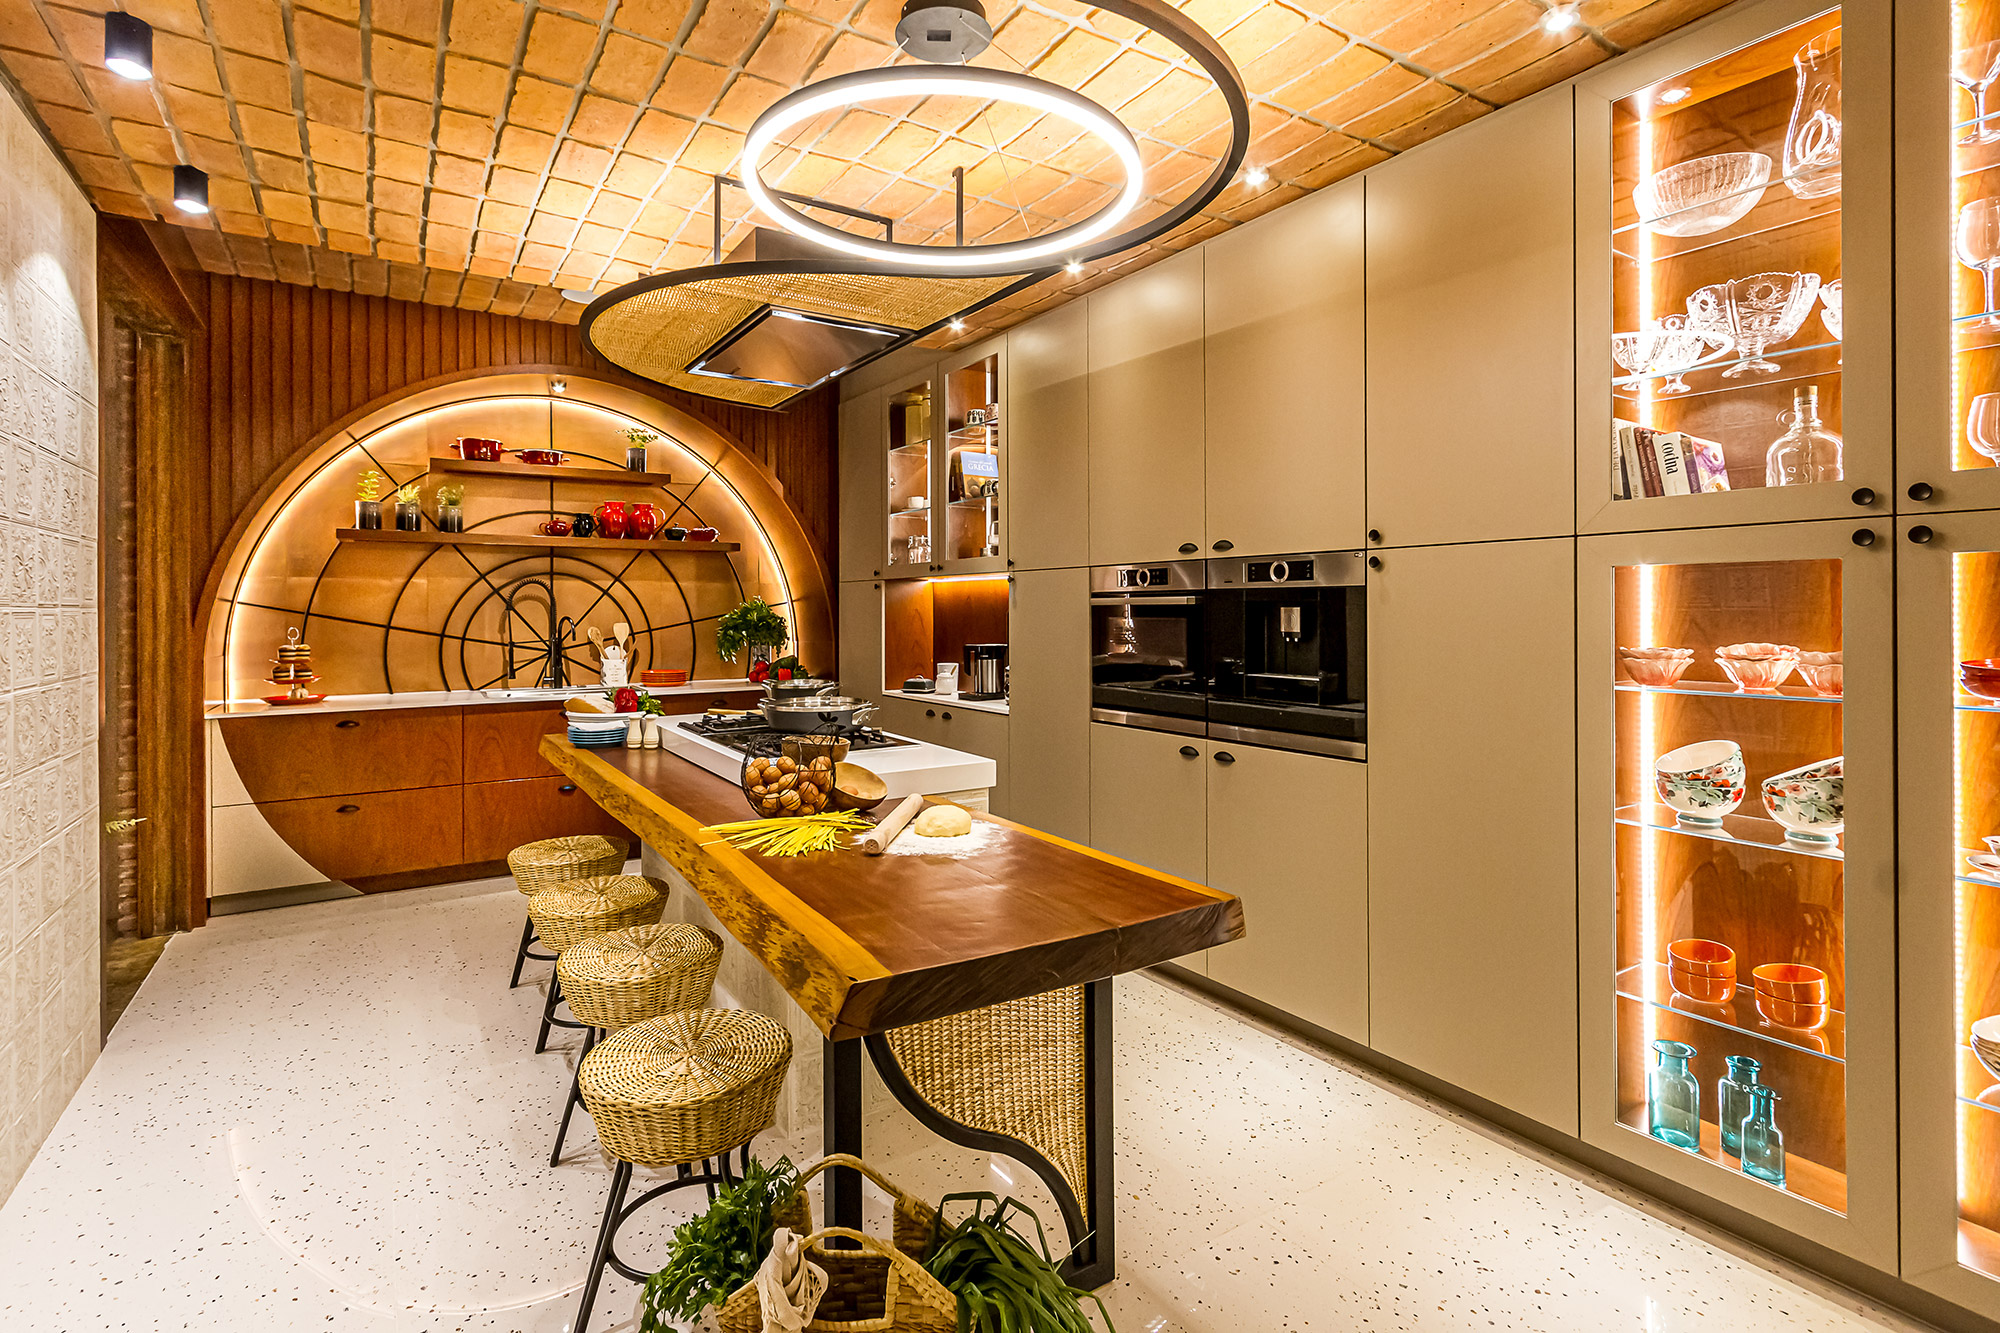 casacor bolivia decor decoração arquitetura 2021 mostras cocina cozinha origen rodrigo duran silvana valenzuela